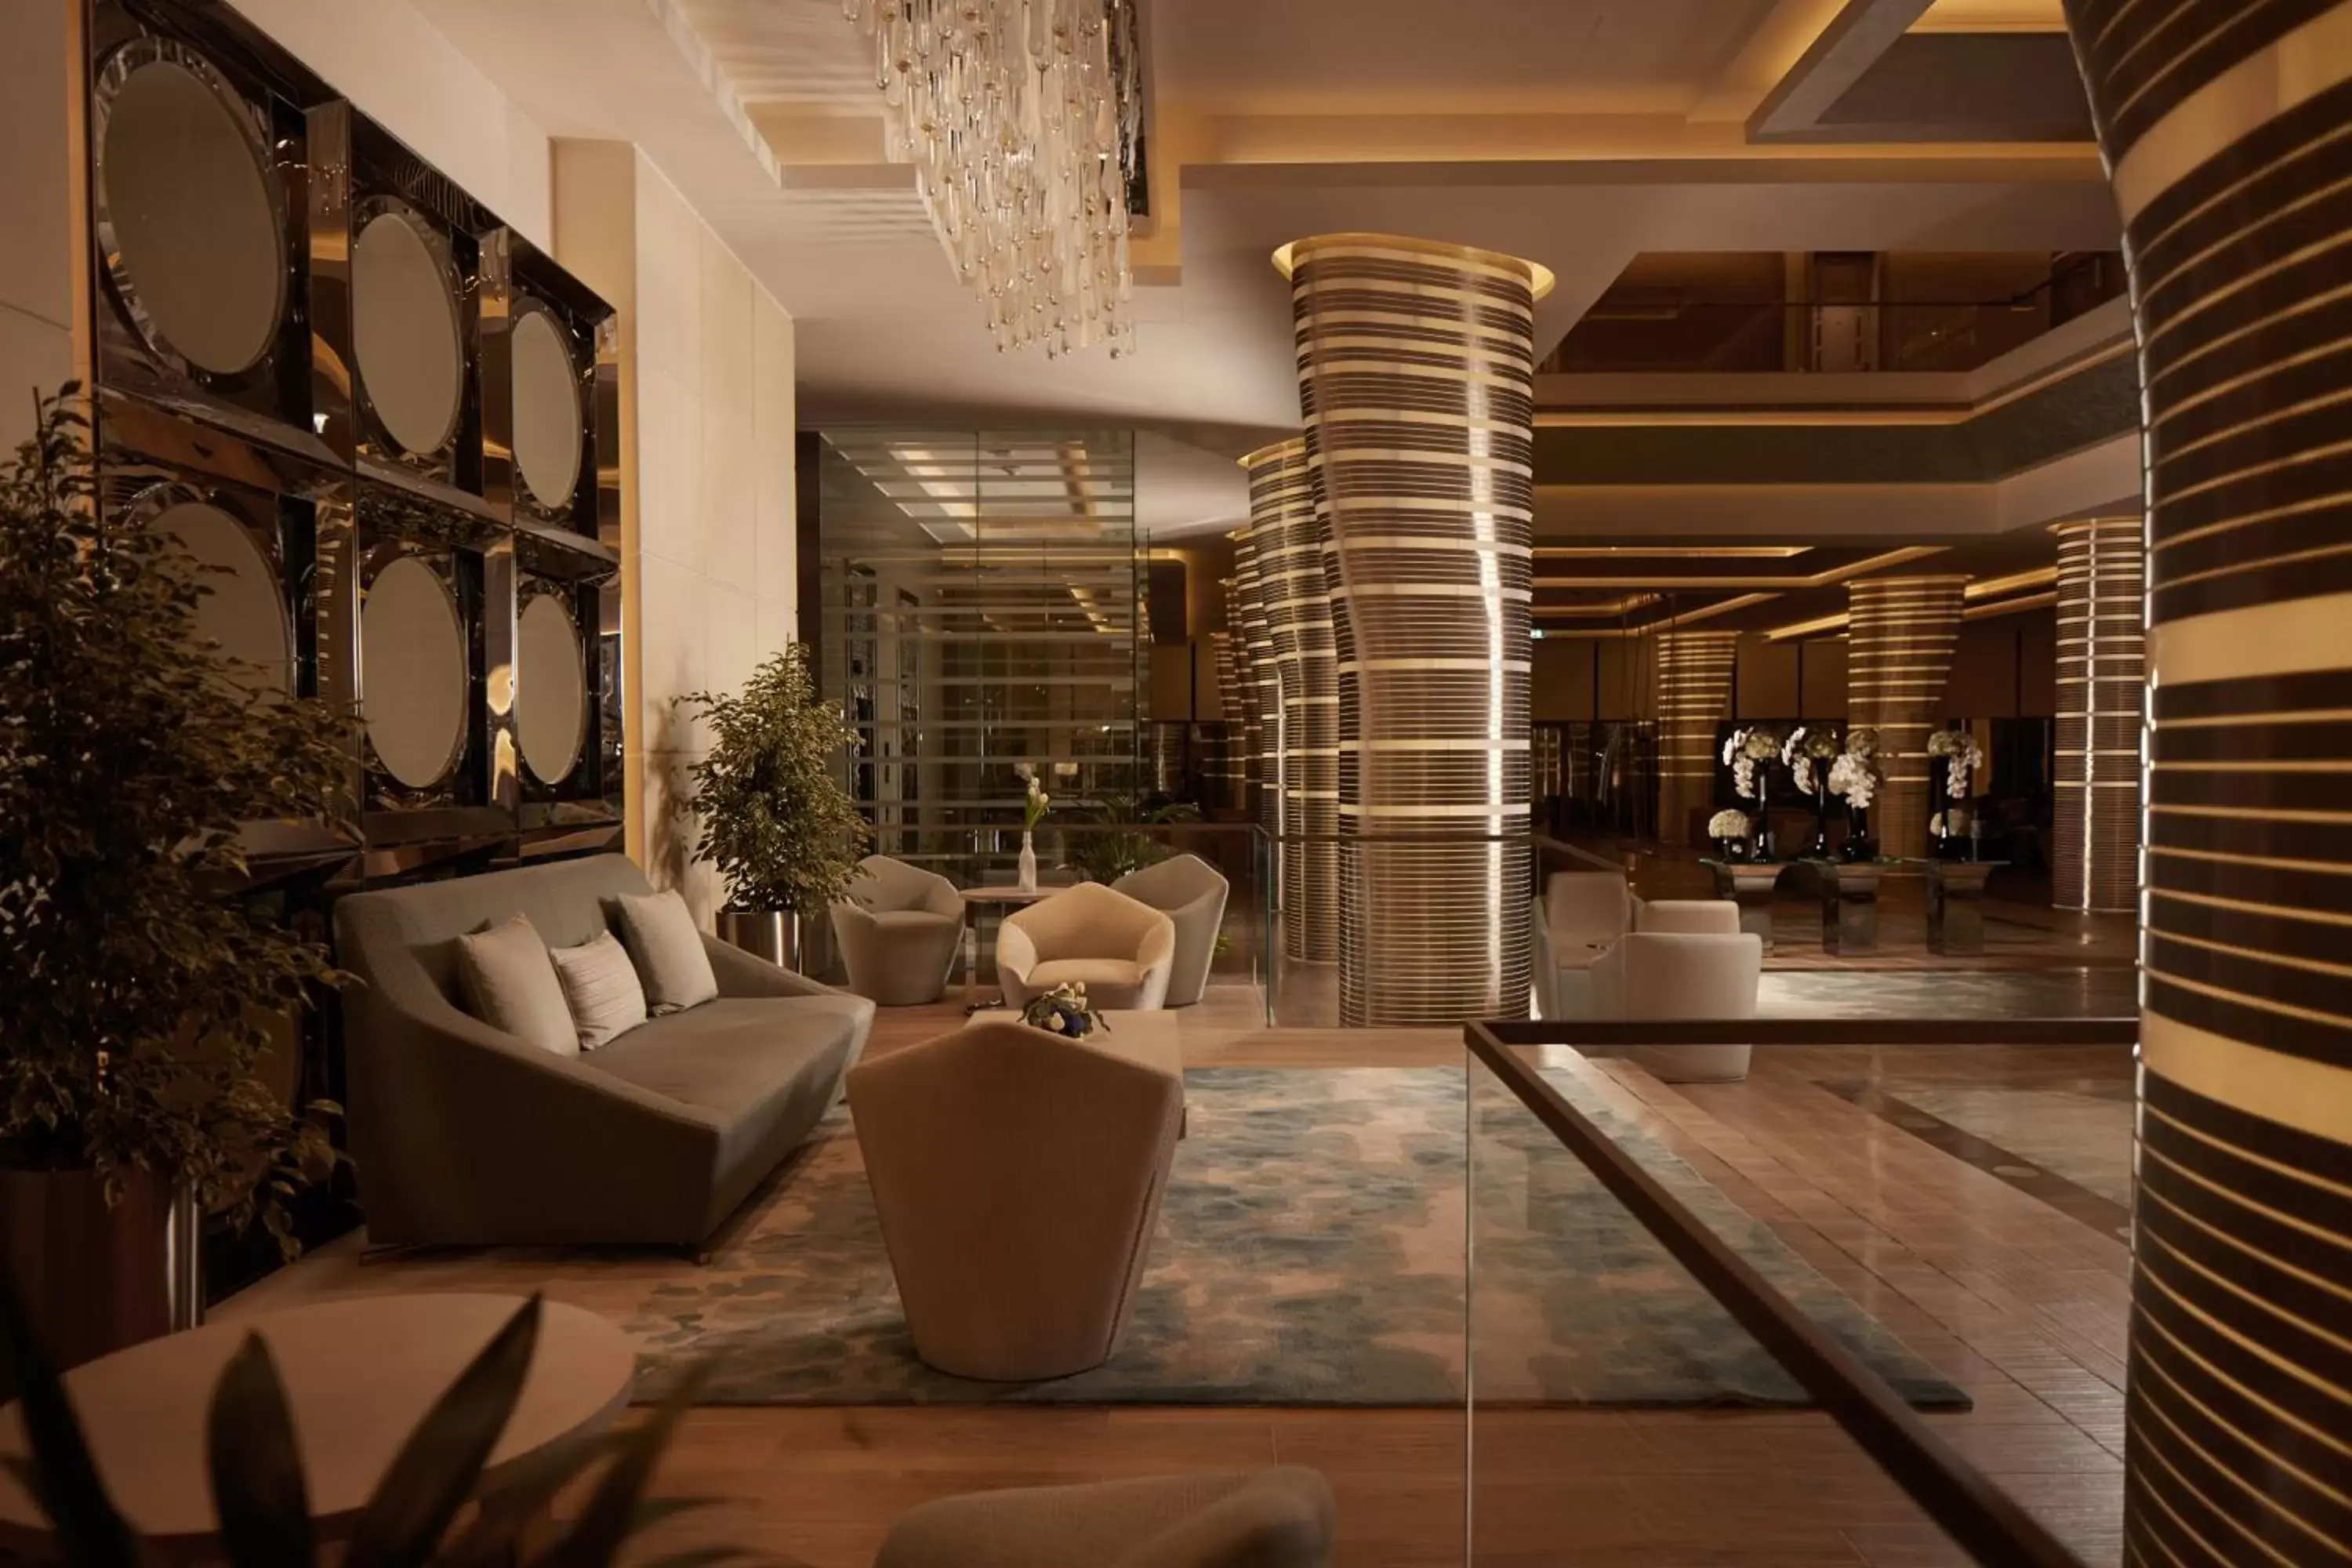 Lobby or reception in Royal M Hotel & Resort Abu Dhabi